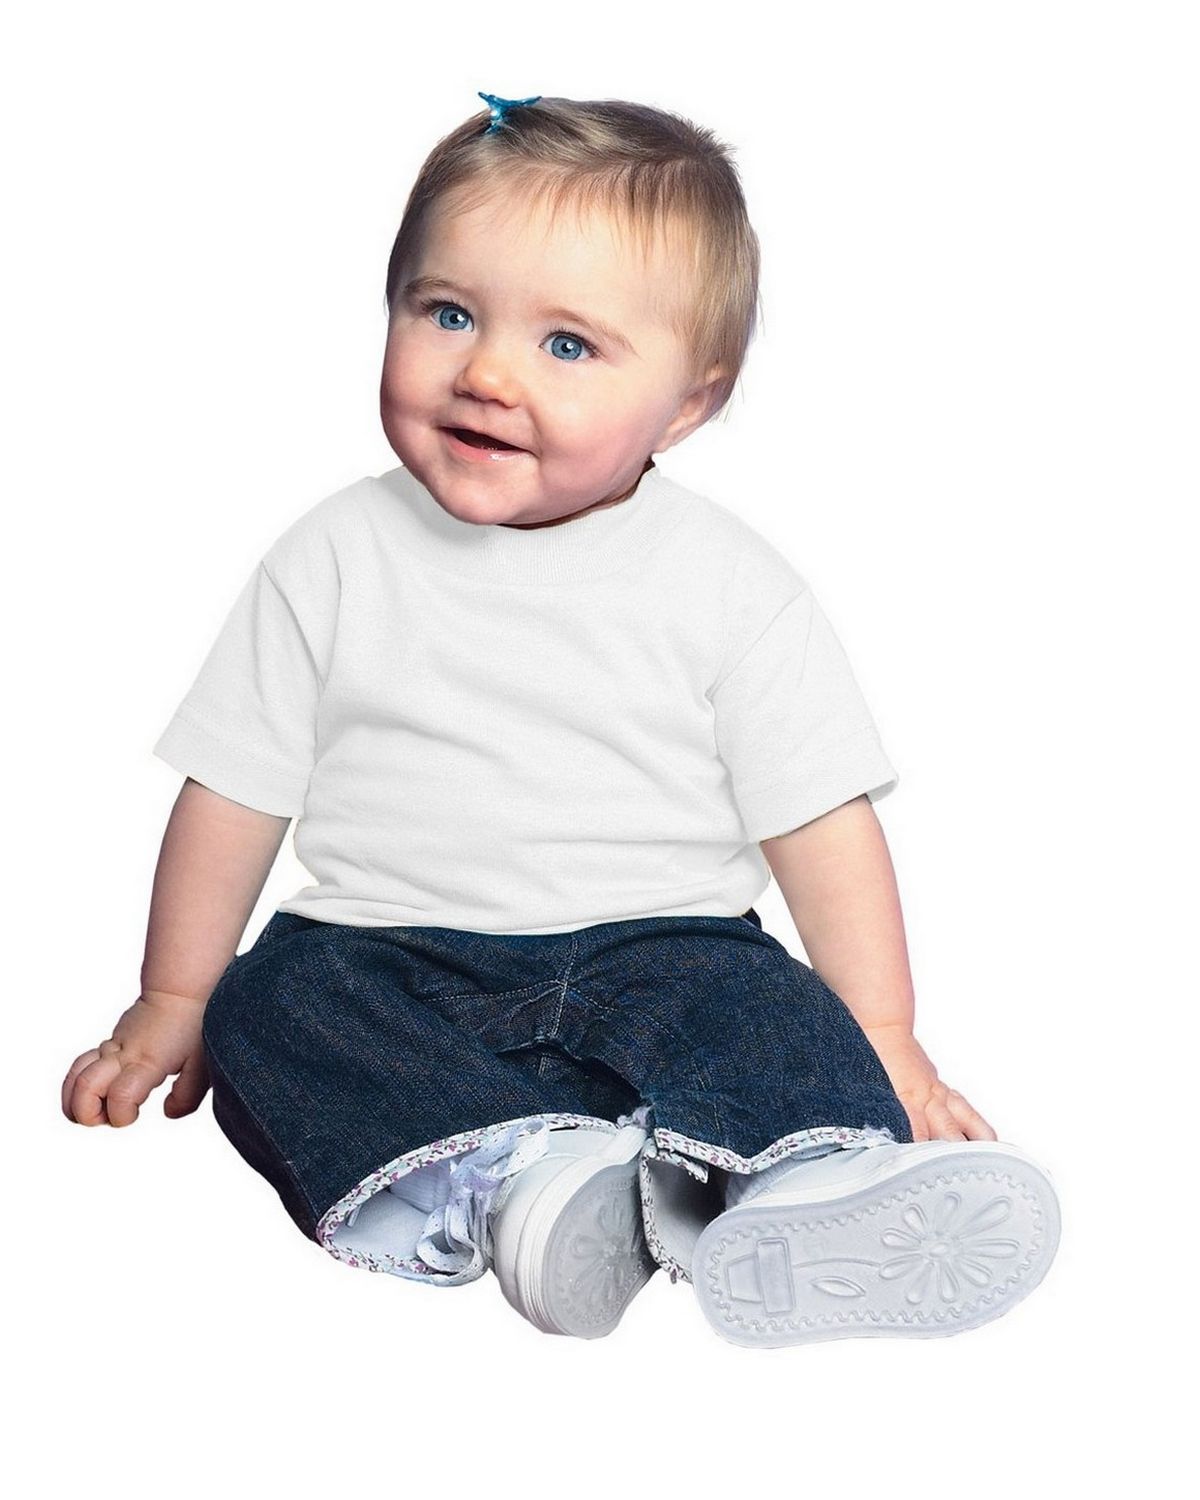 37 Colors Rabbit Skins Infant Short Sleeve Cotton T-Shirt 3401 6M 12M 18M 24M